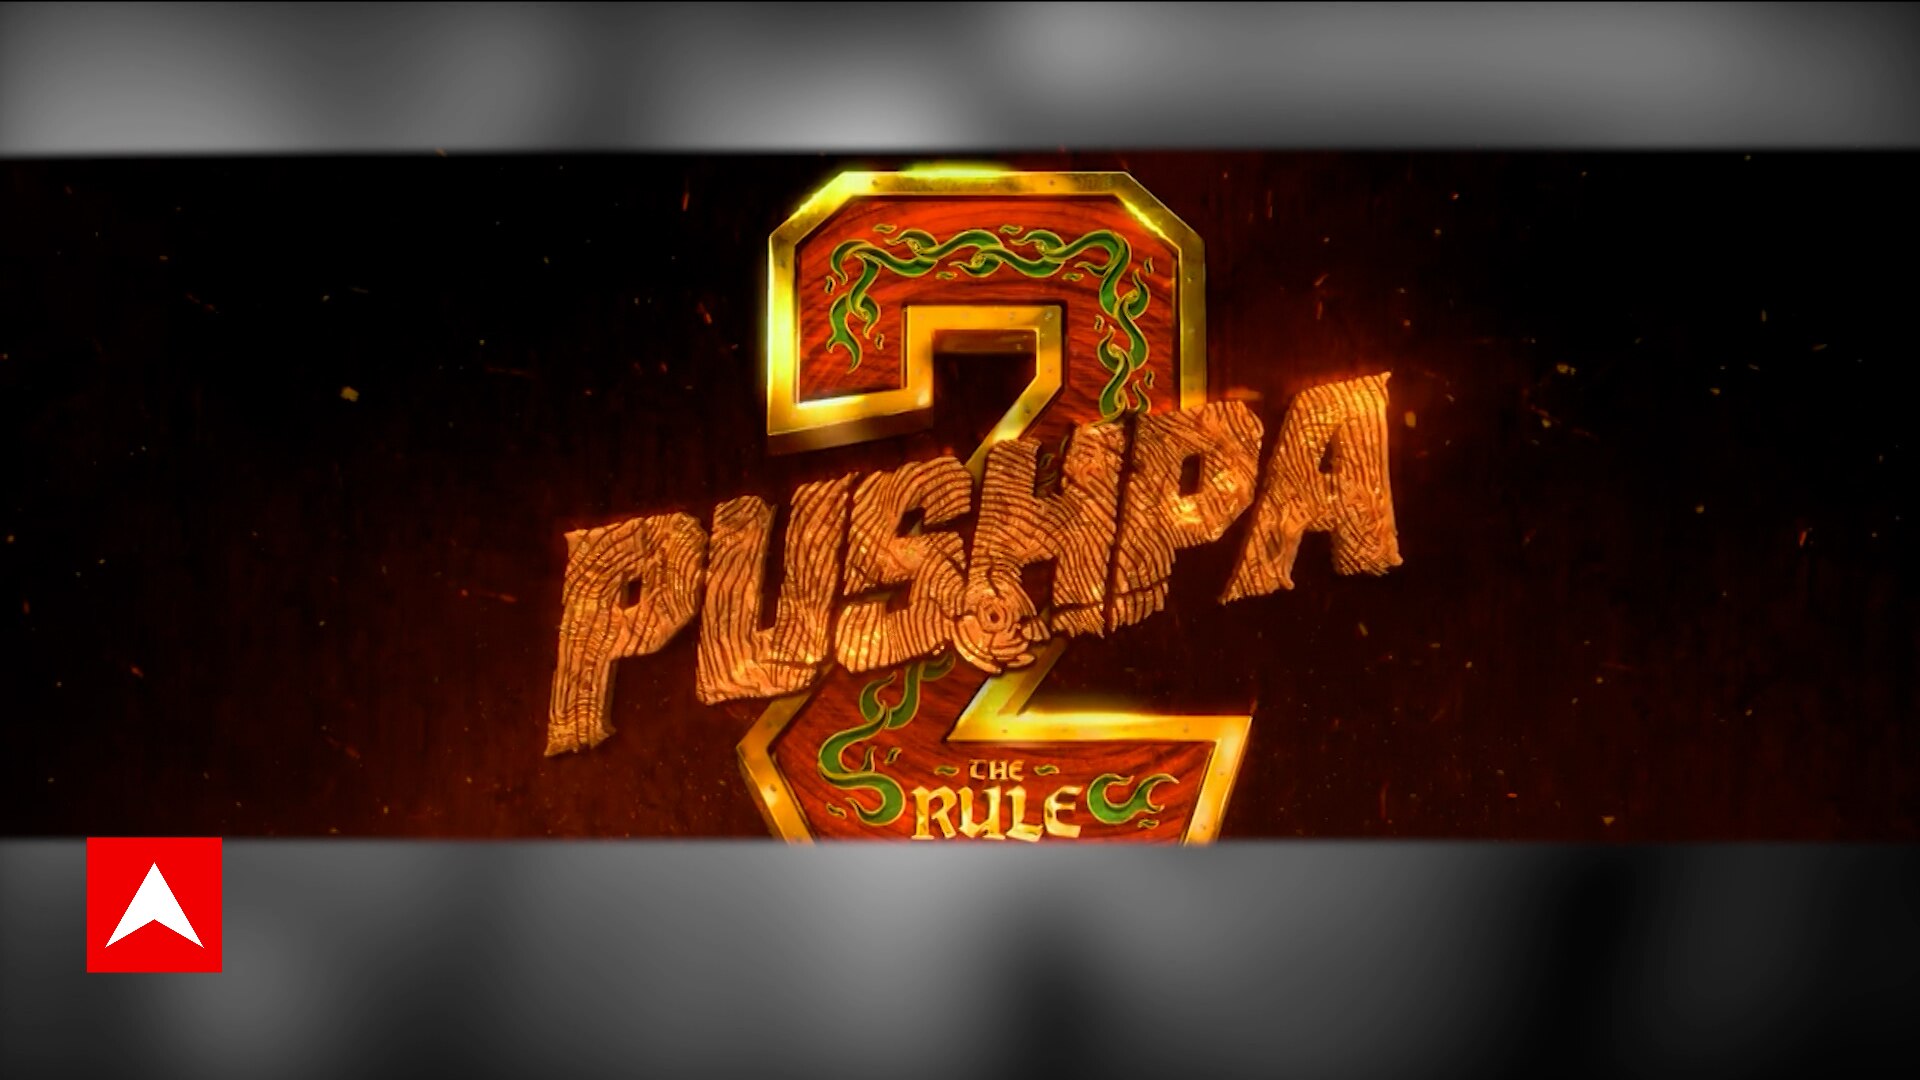 Pushpa (@pushpamovie) • Instagram photos and videos